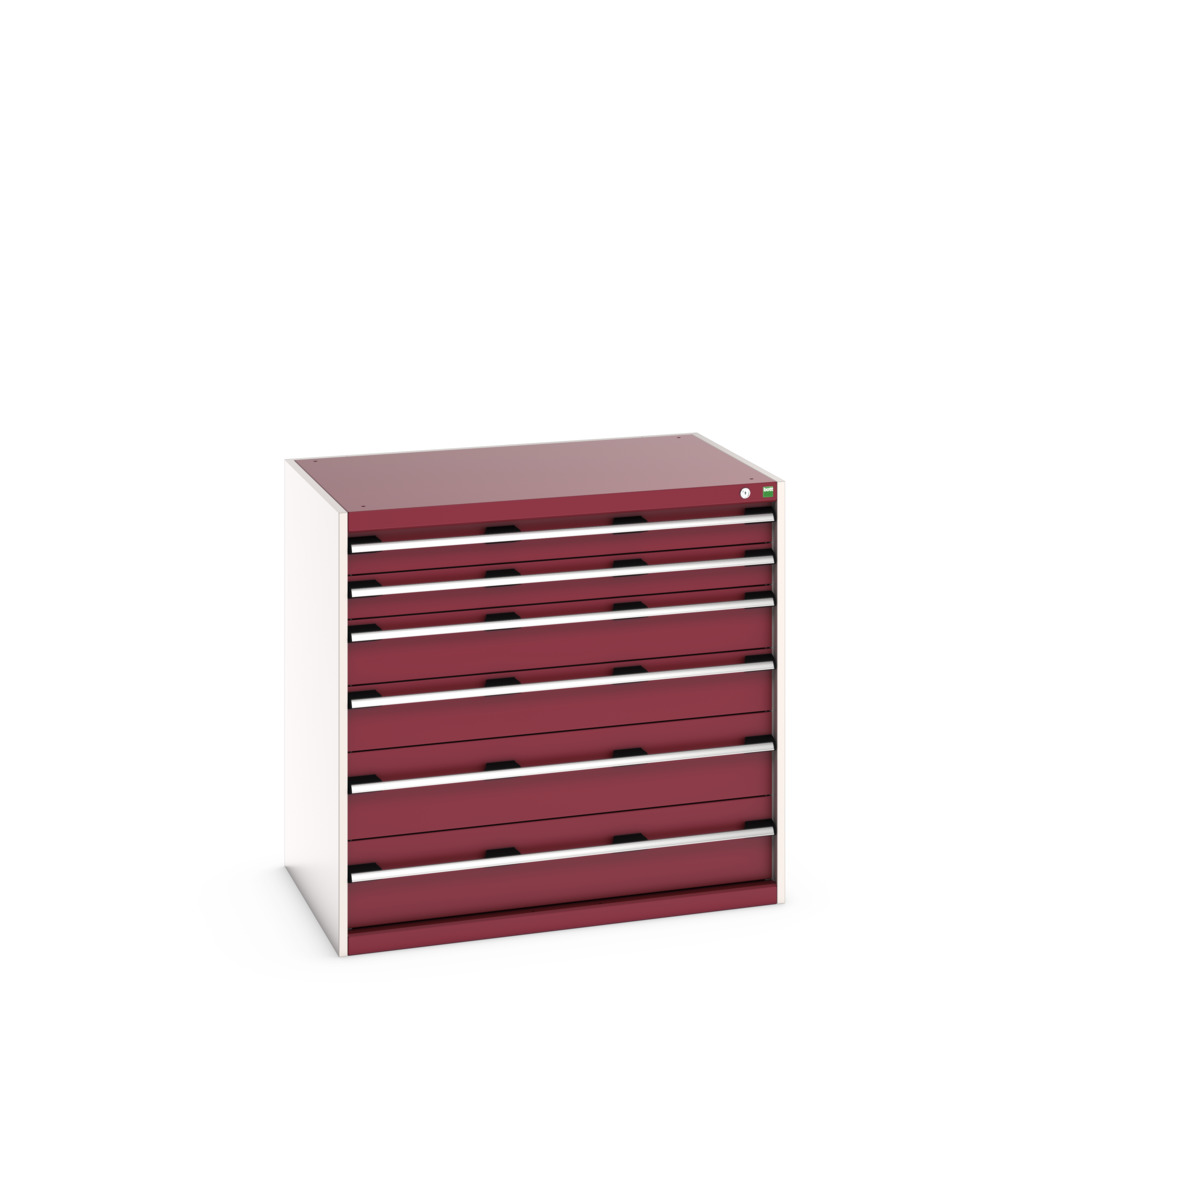 40029108.24V - cubio drawer cabinet